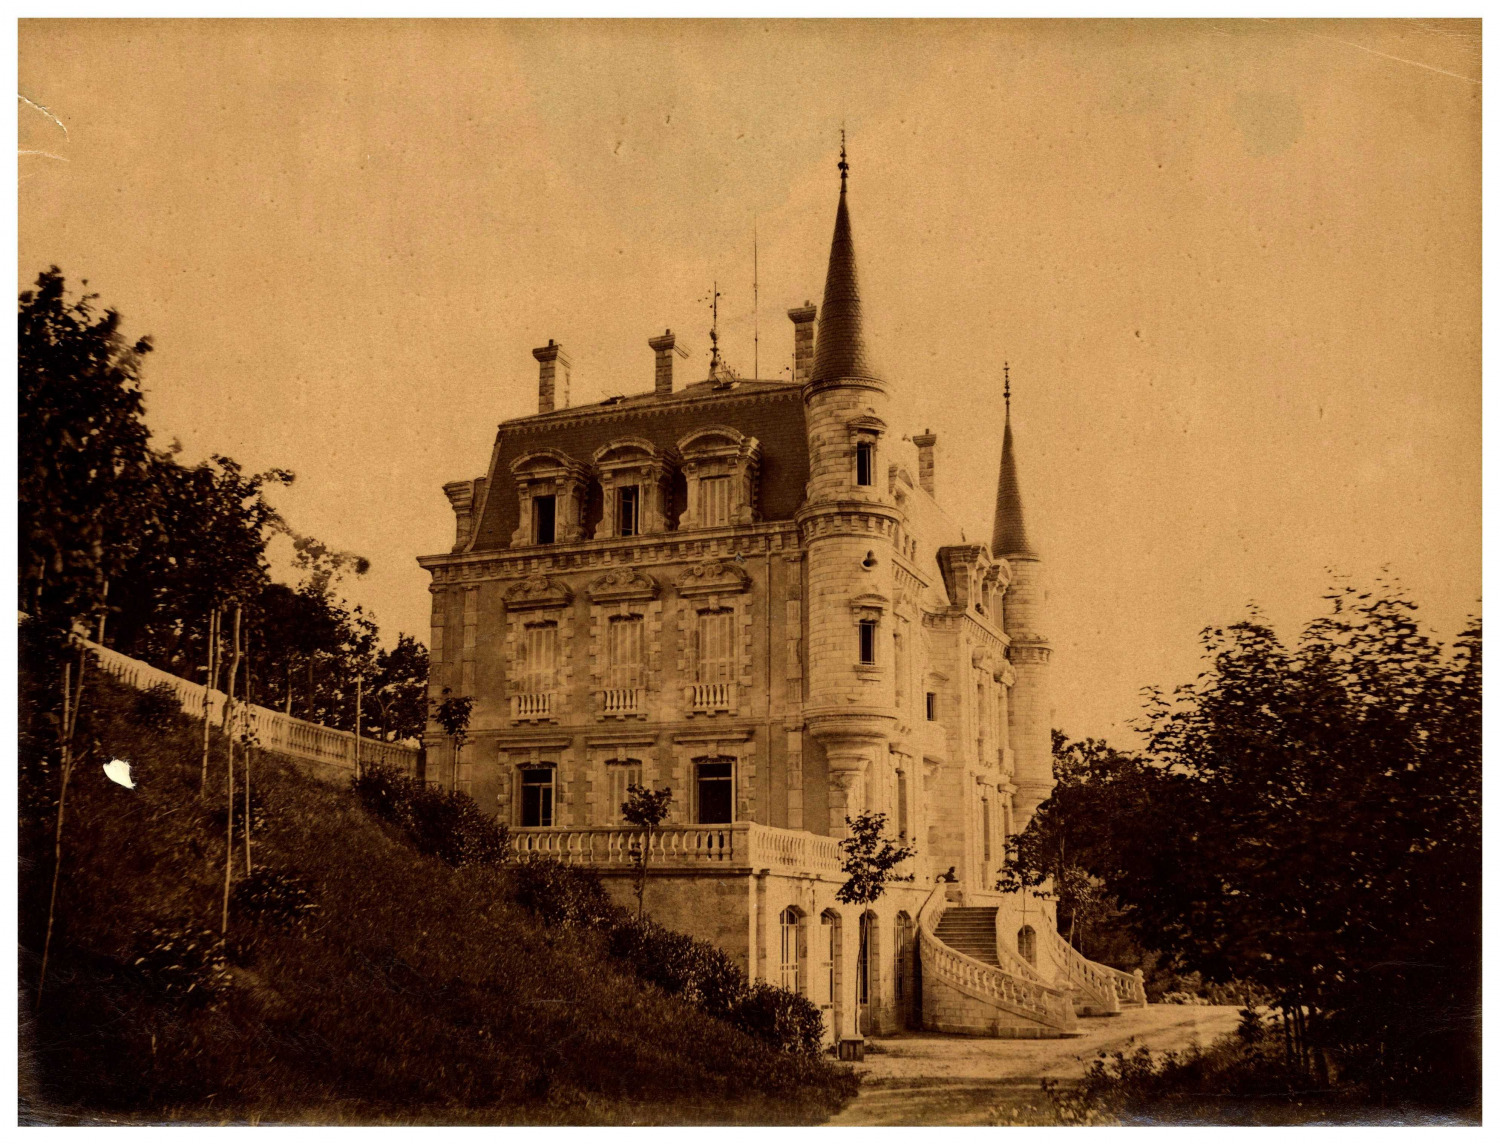 France, Vals-les-Bains, Château Clément vintage albumen print, albumin print print